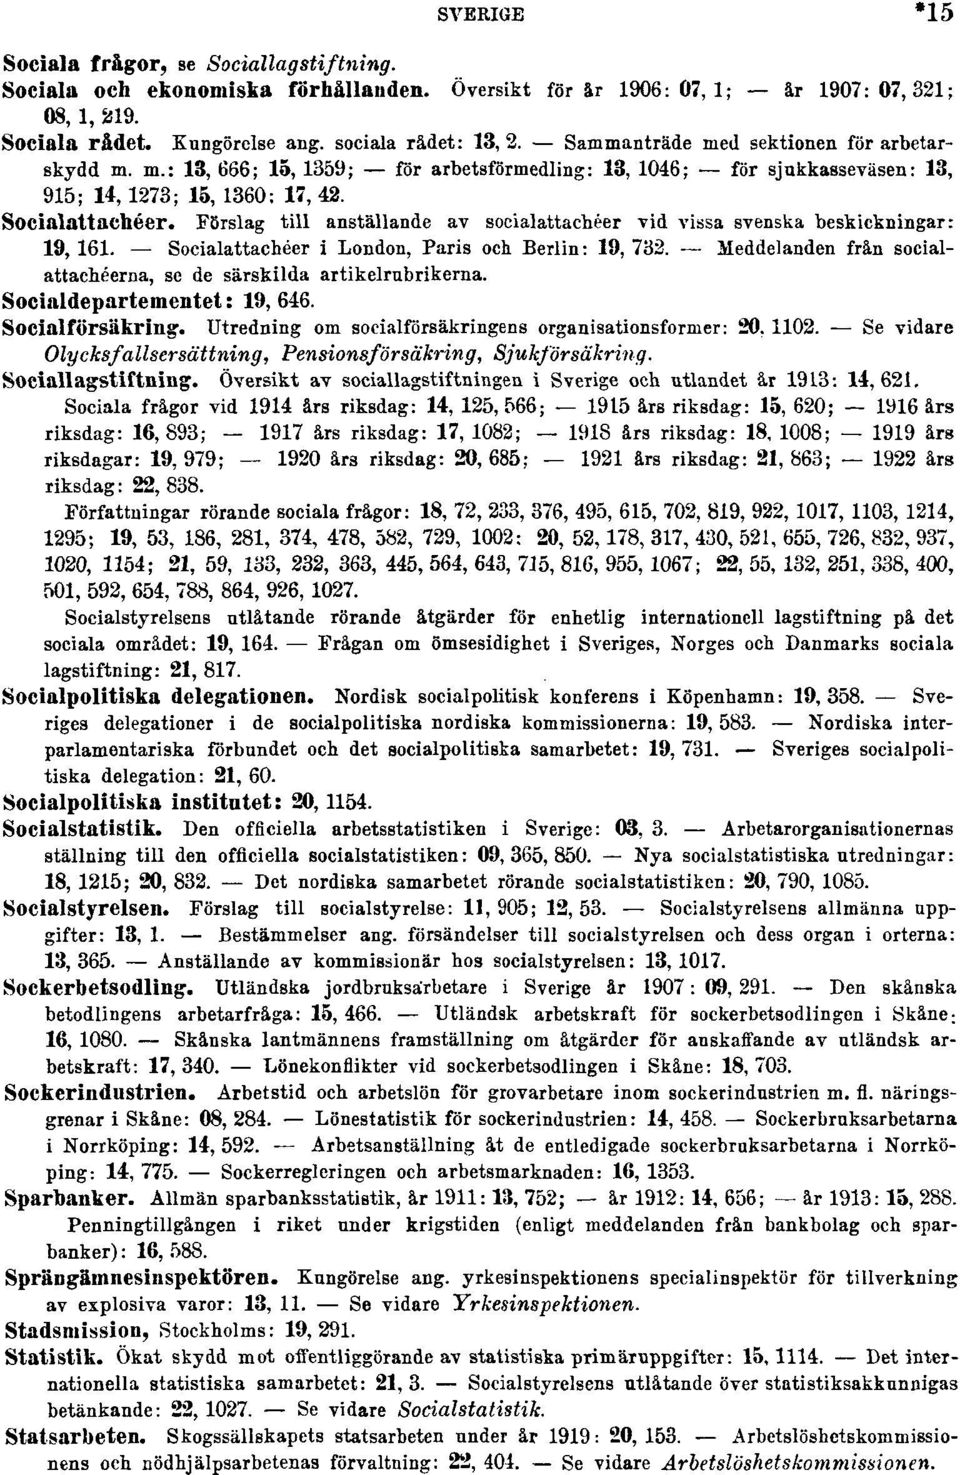 Förslag till anställande av socialattachéer vid vissa svenska beskickningar: 19, 161. Socialattachéer i London, Paris och Berlin: 19, 732.